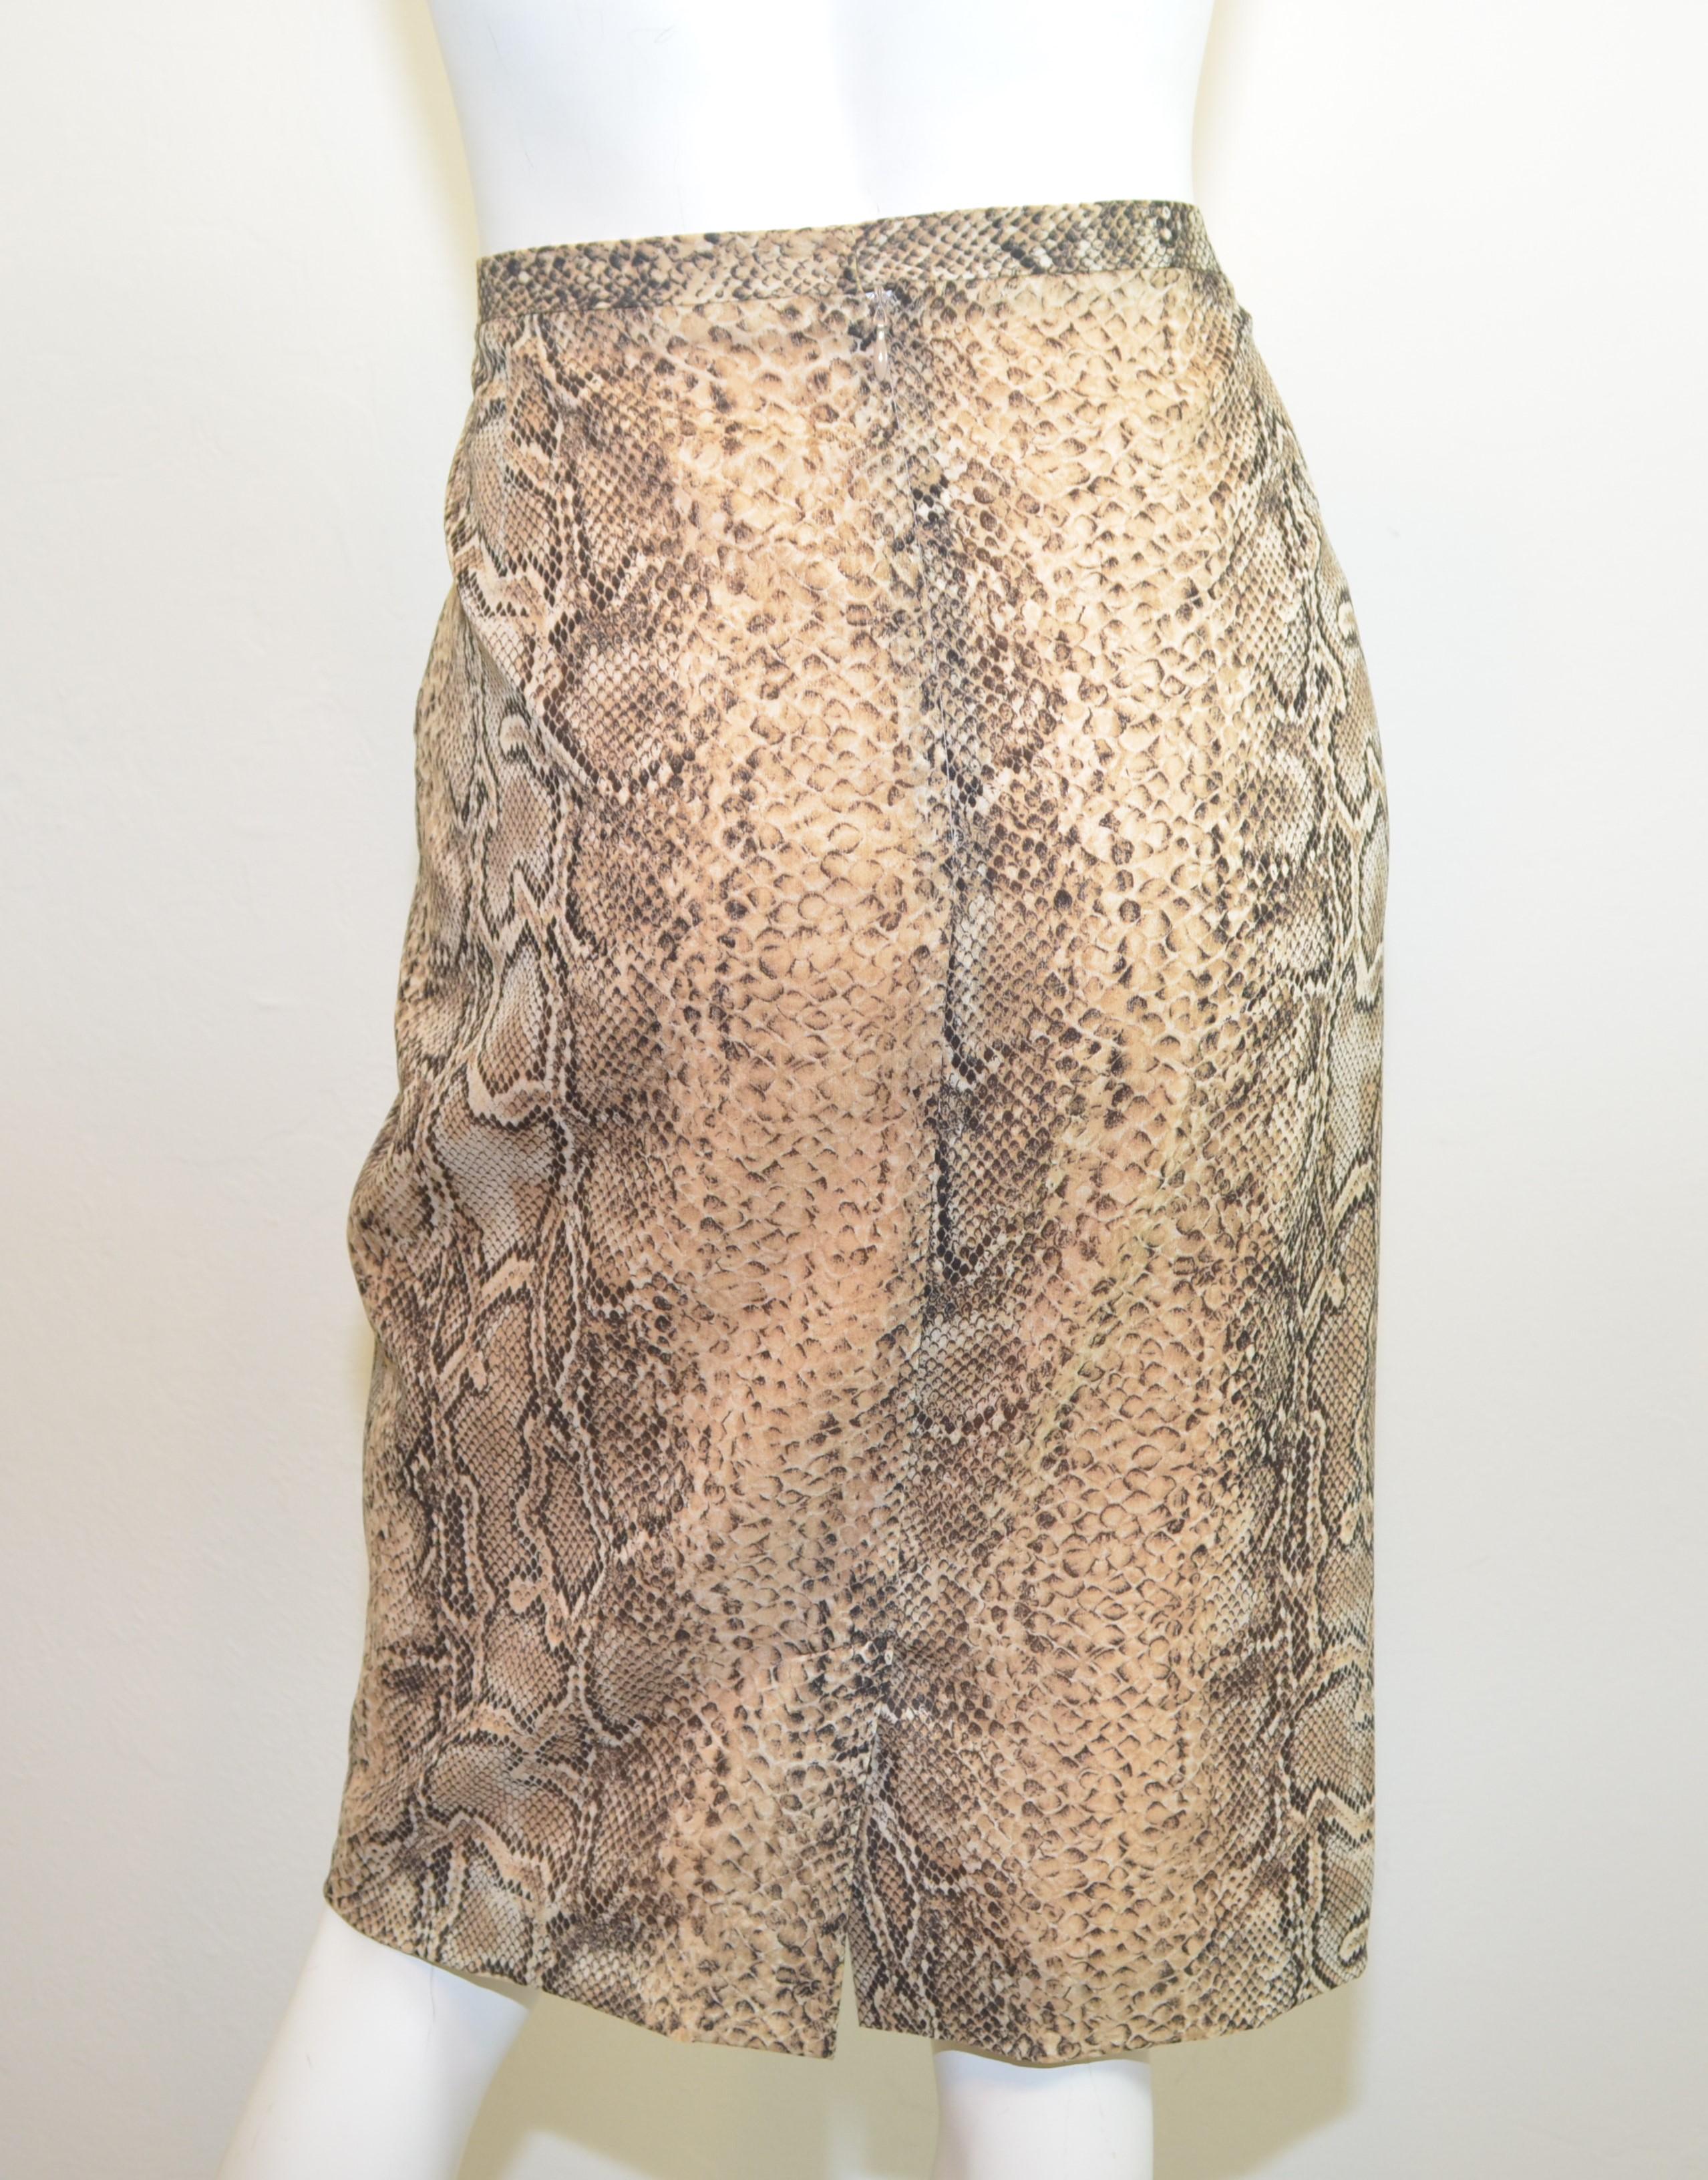 snakeskin pencil skirt